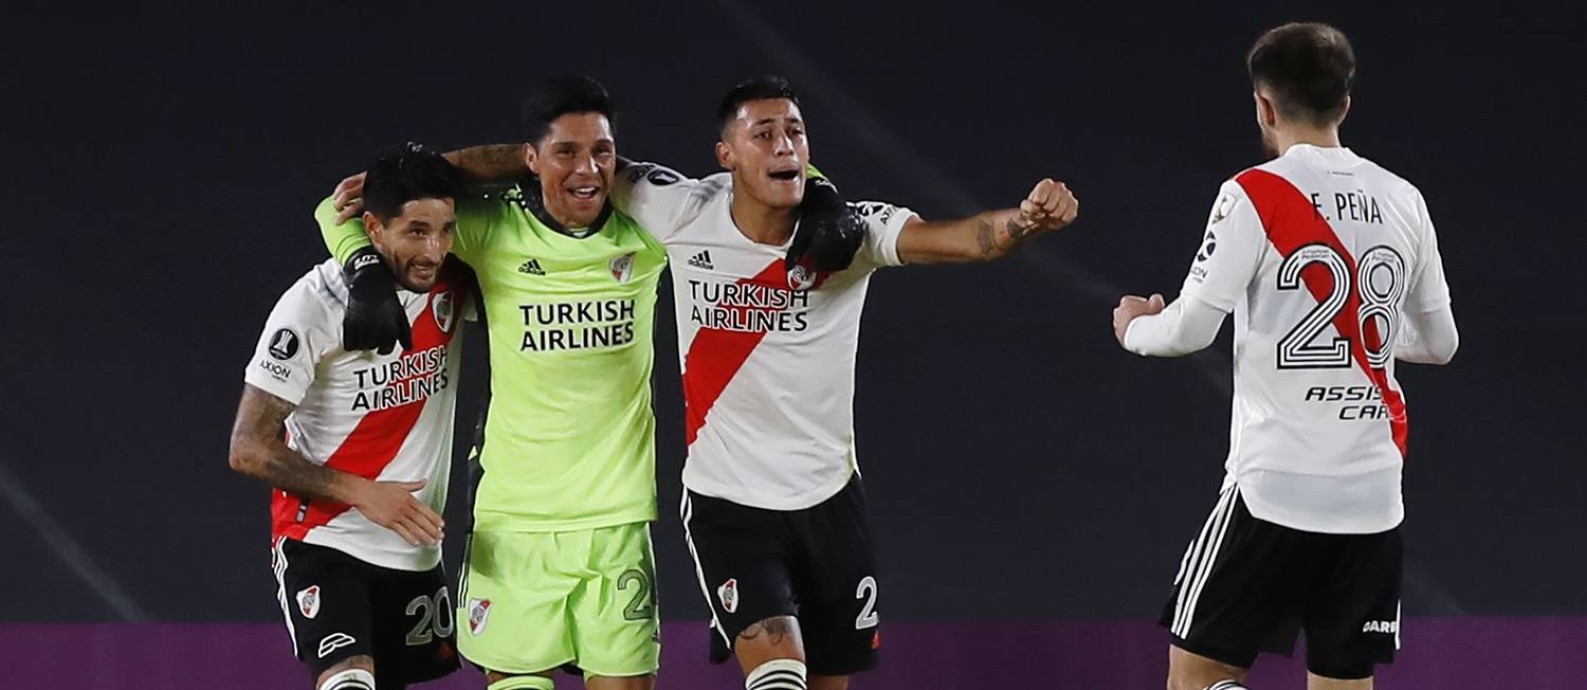 Enzo Perez, meia que atuou no gol, comemora com companheiros do River Plate Foto: JUAN IGNACIO RONCORONI / Pool via REUTERS